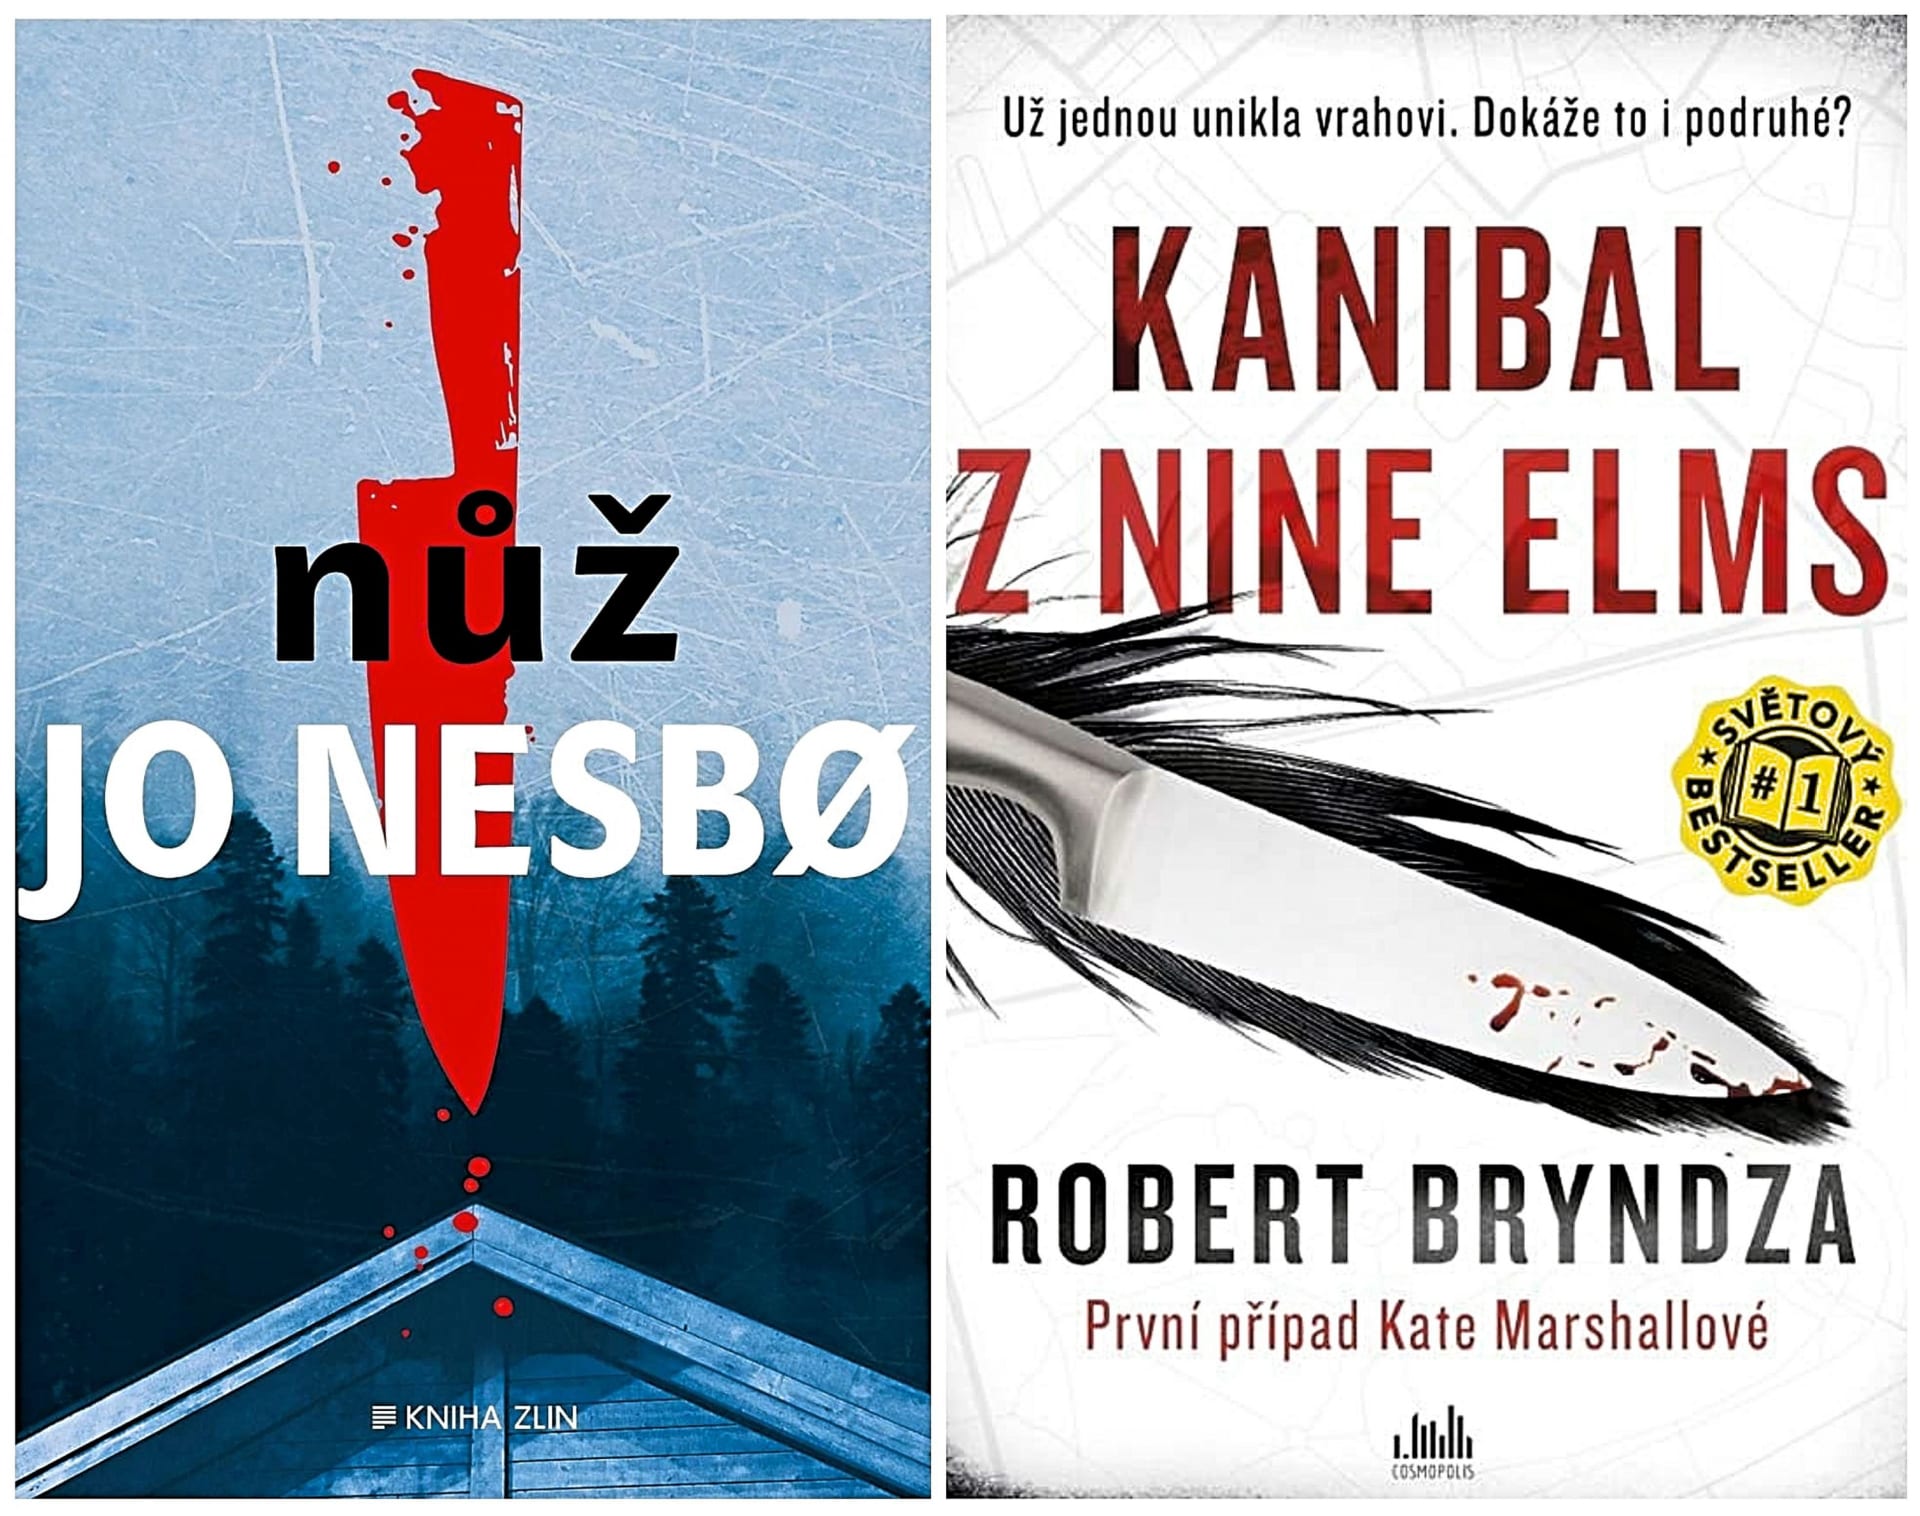 Nůž od Jo Nesbø, Kanibal z Nine Elms od Robert Bryndza